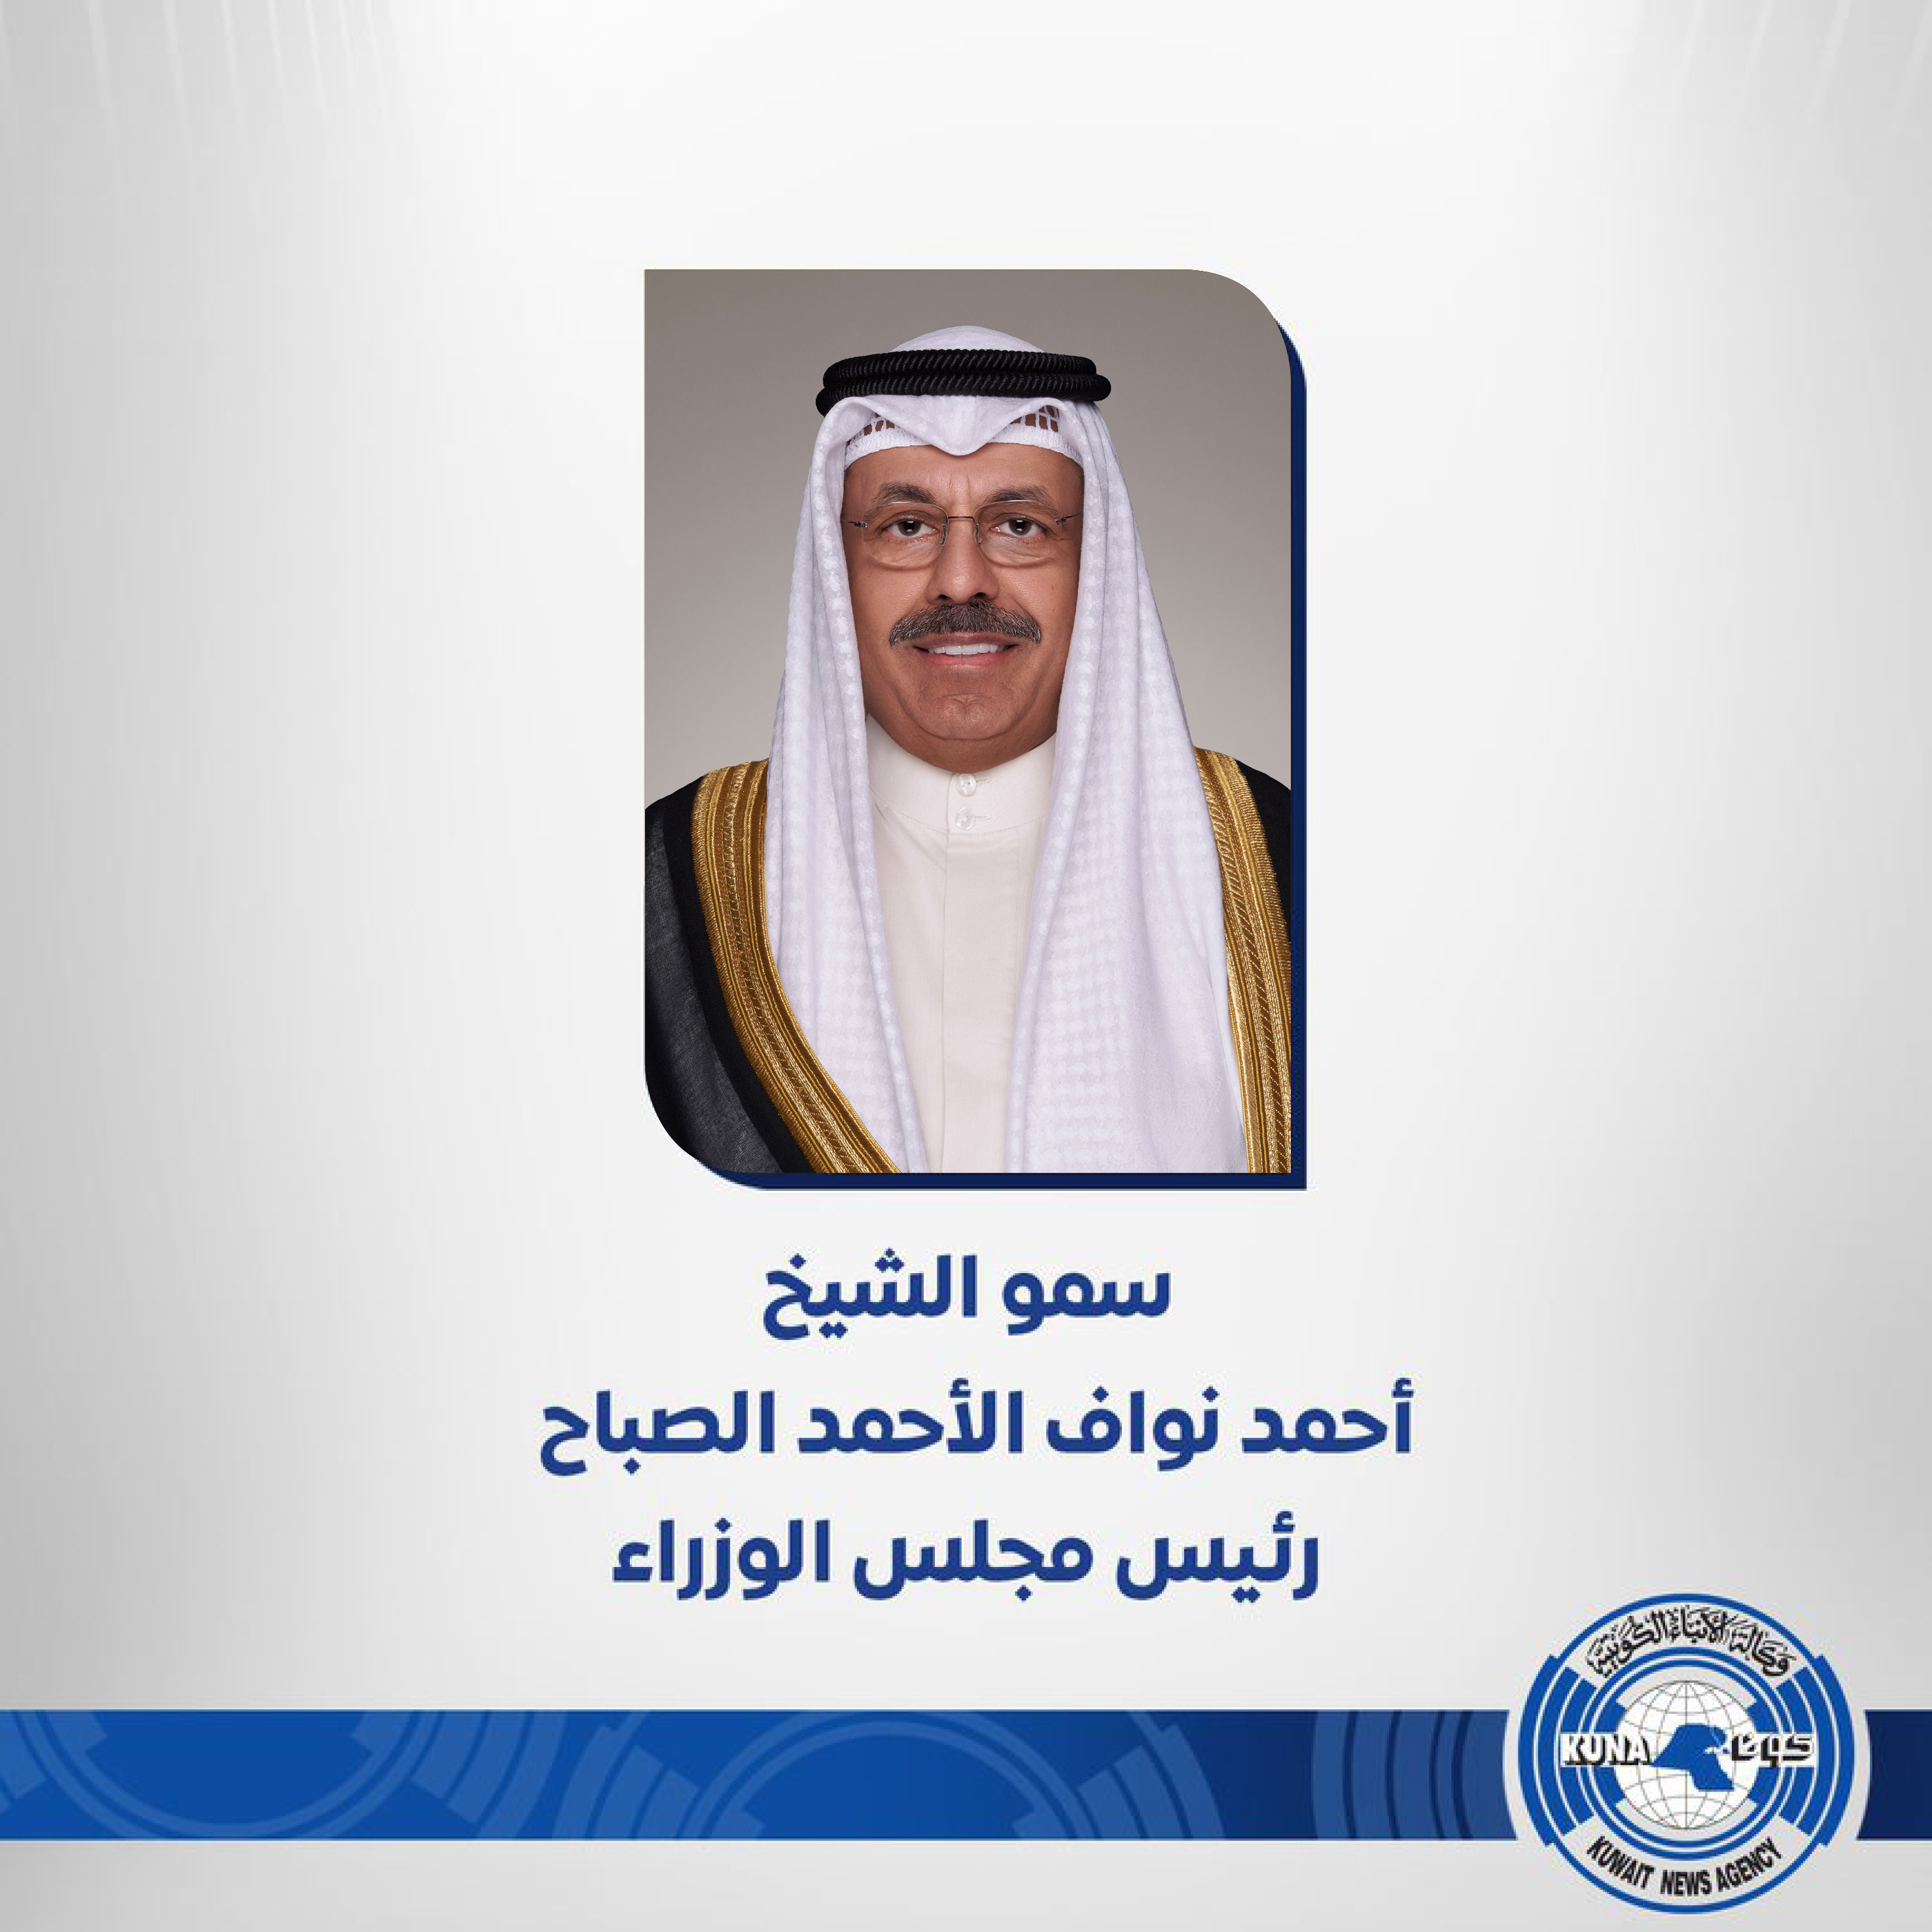 سمو رئيس مجلس الوزراء يبعث ببرقية تهنئة إلى ملك الأردن بمناسبة الذكرى ال24 لتوليه العرش                                                                                                                                                                   